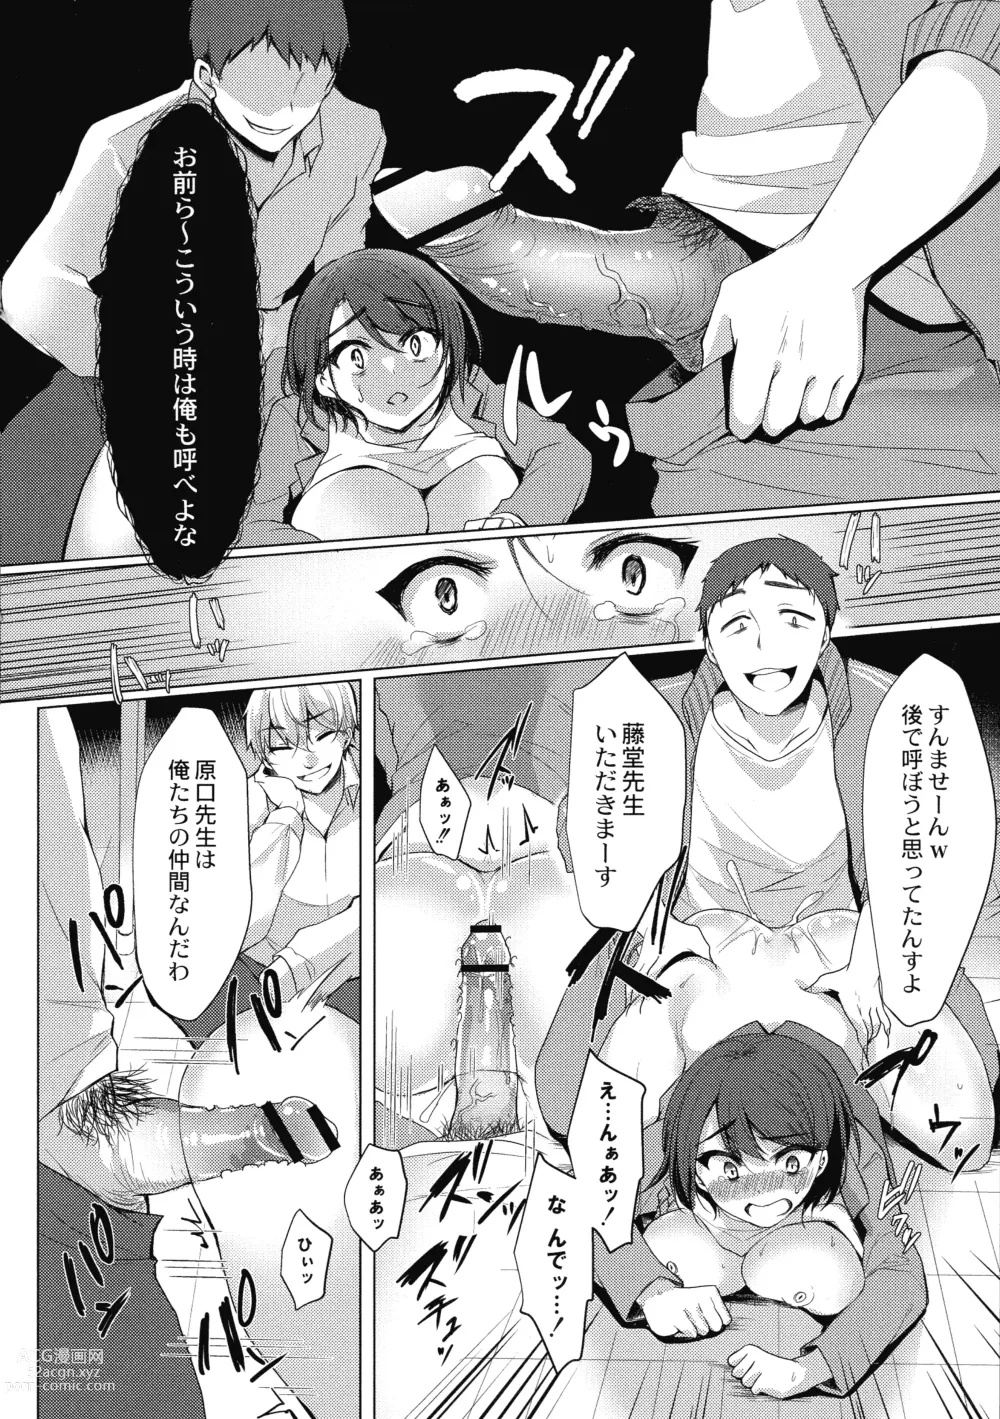 Page 195 of doujinshi Mesuochi.